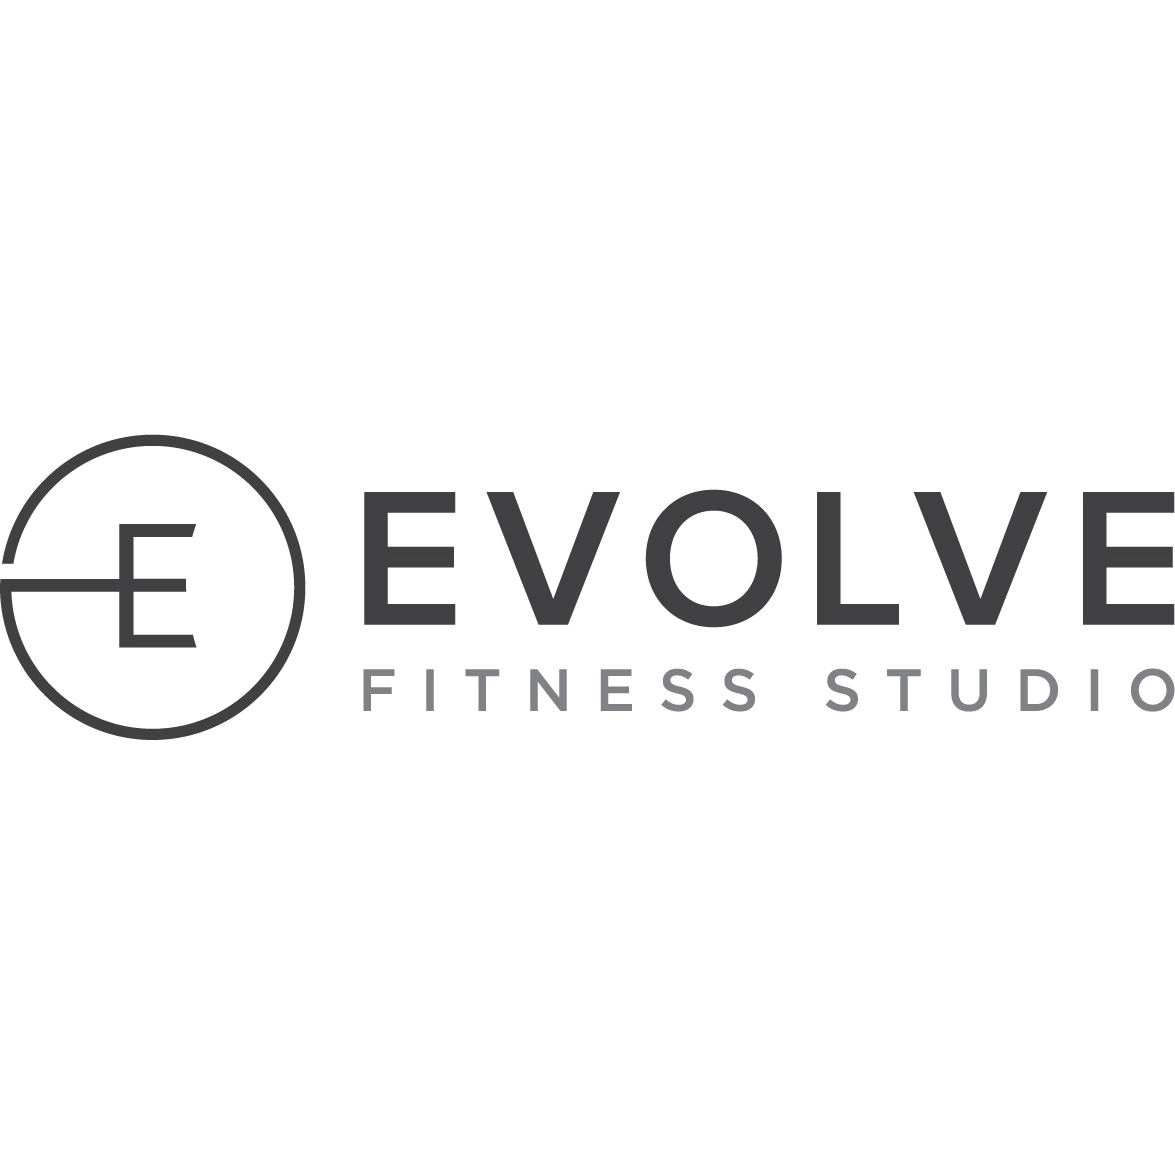 Evolve Fitness Studio